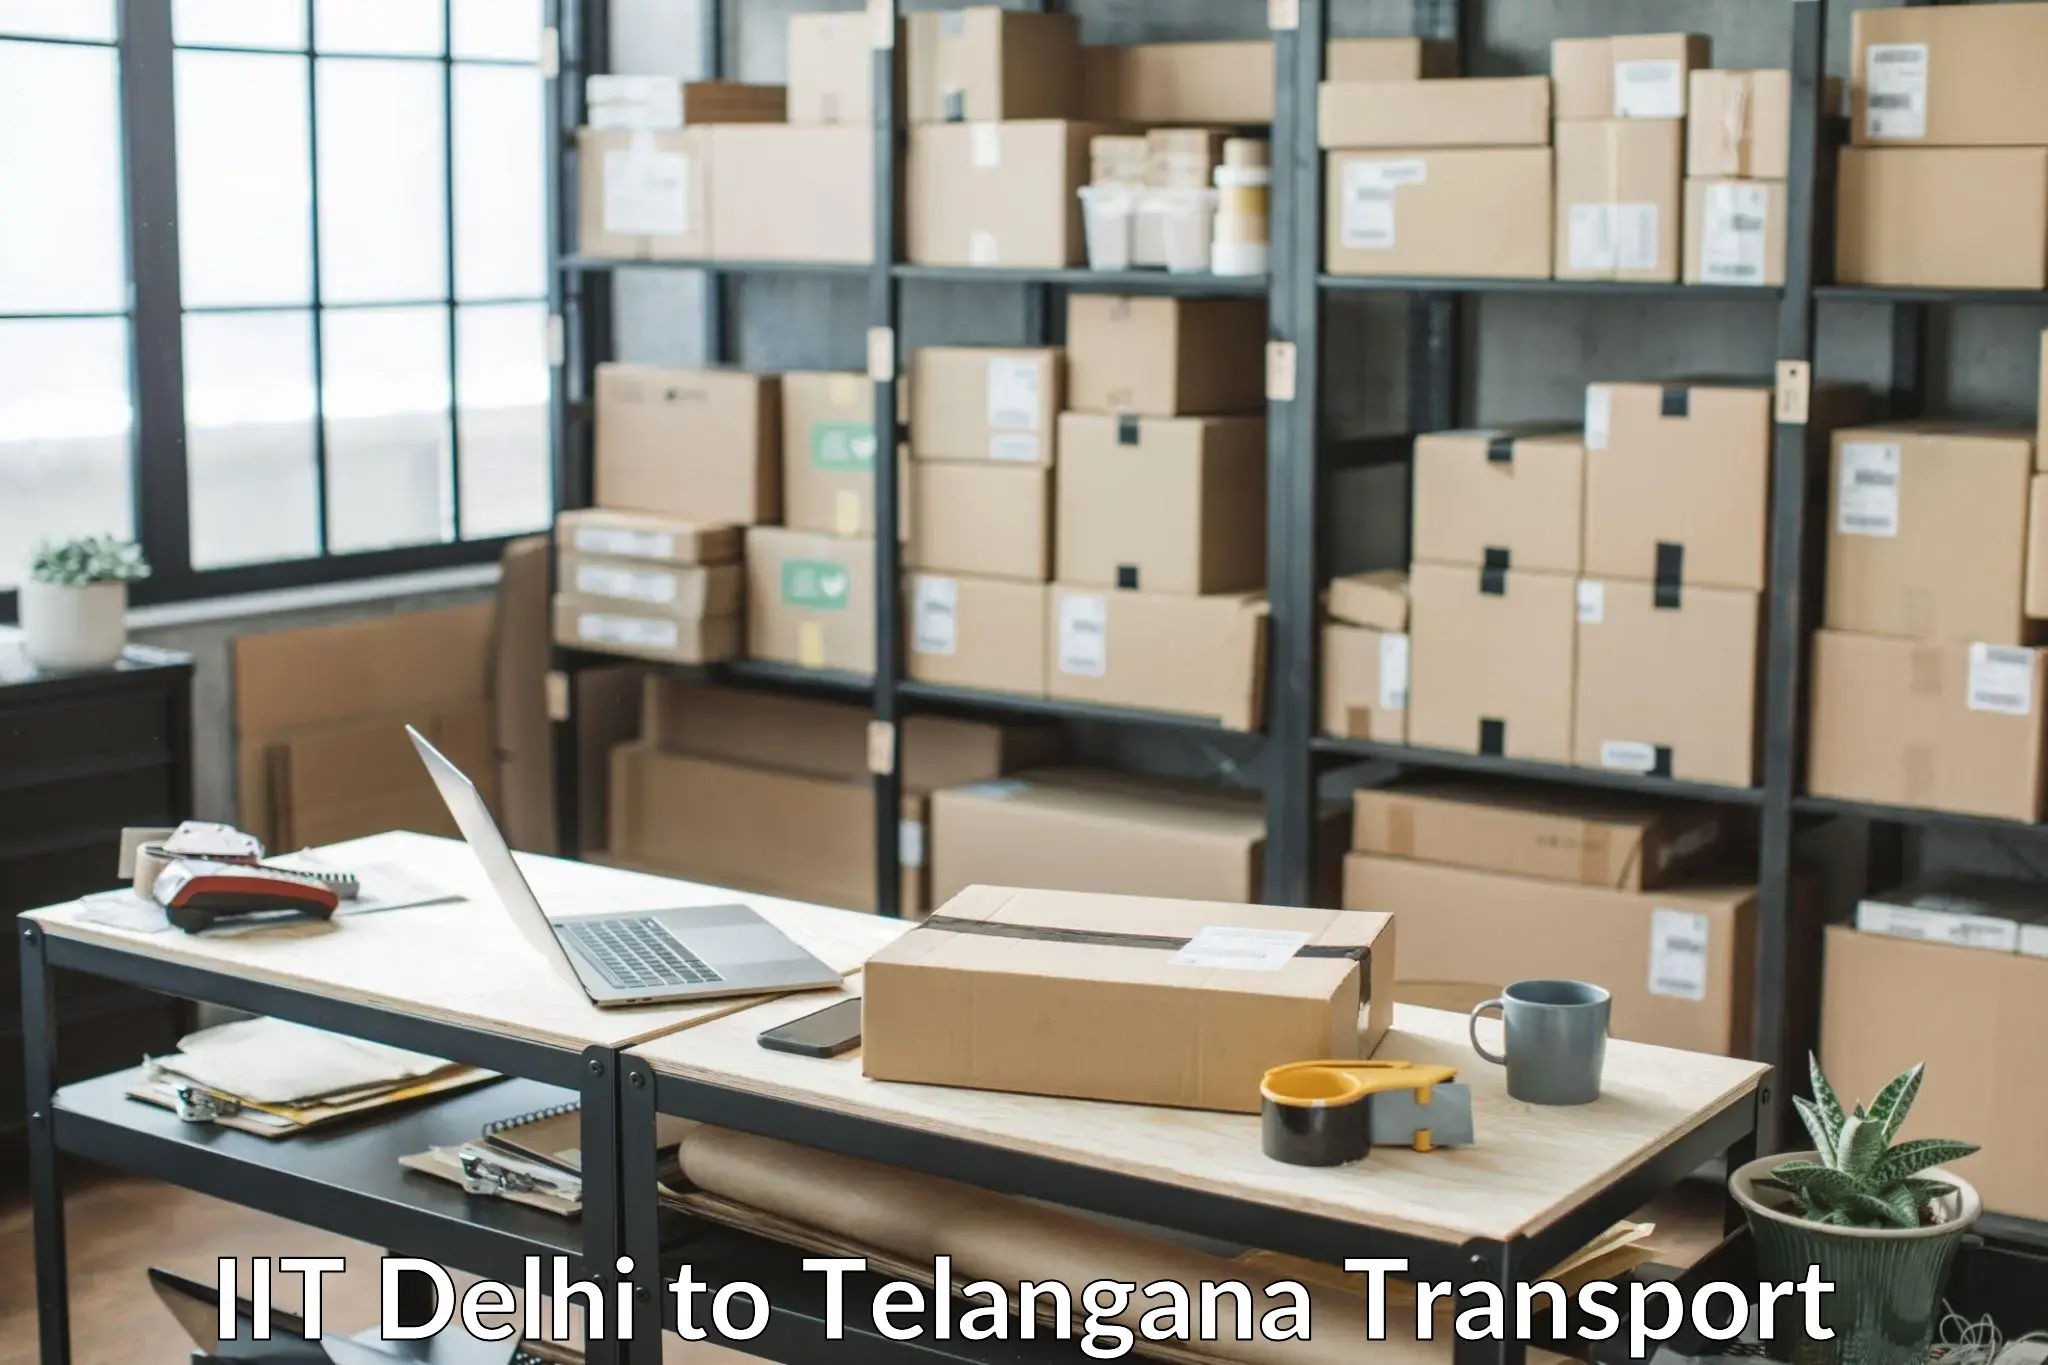 Truck transport companies in India IIT Delhi to Haliya